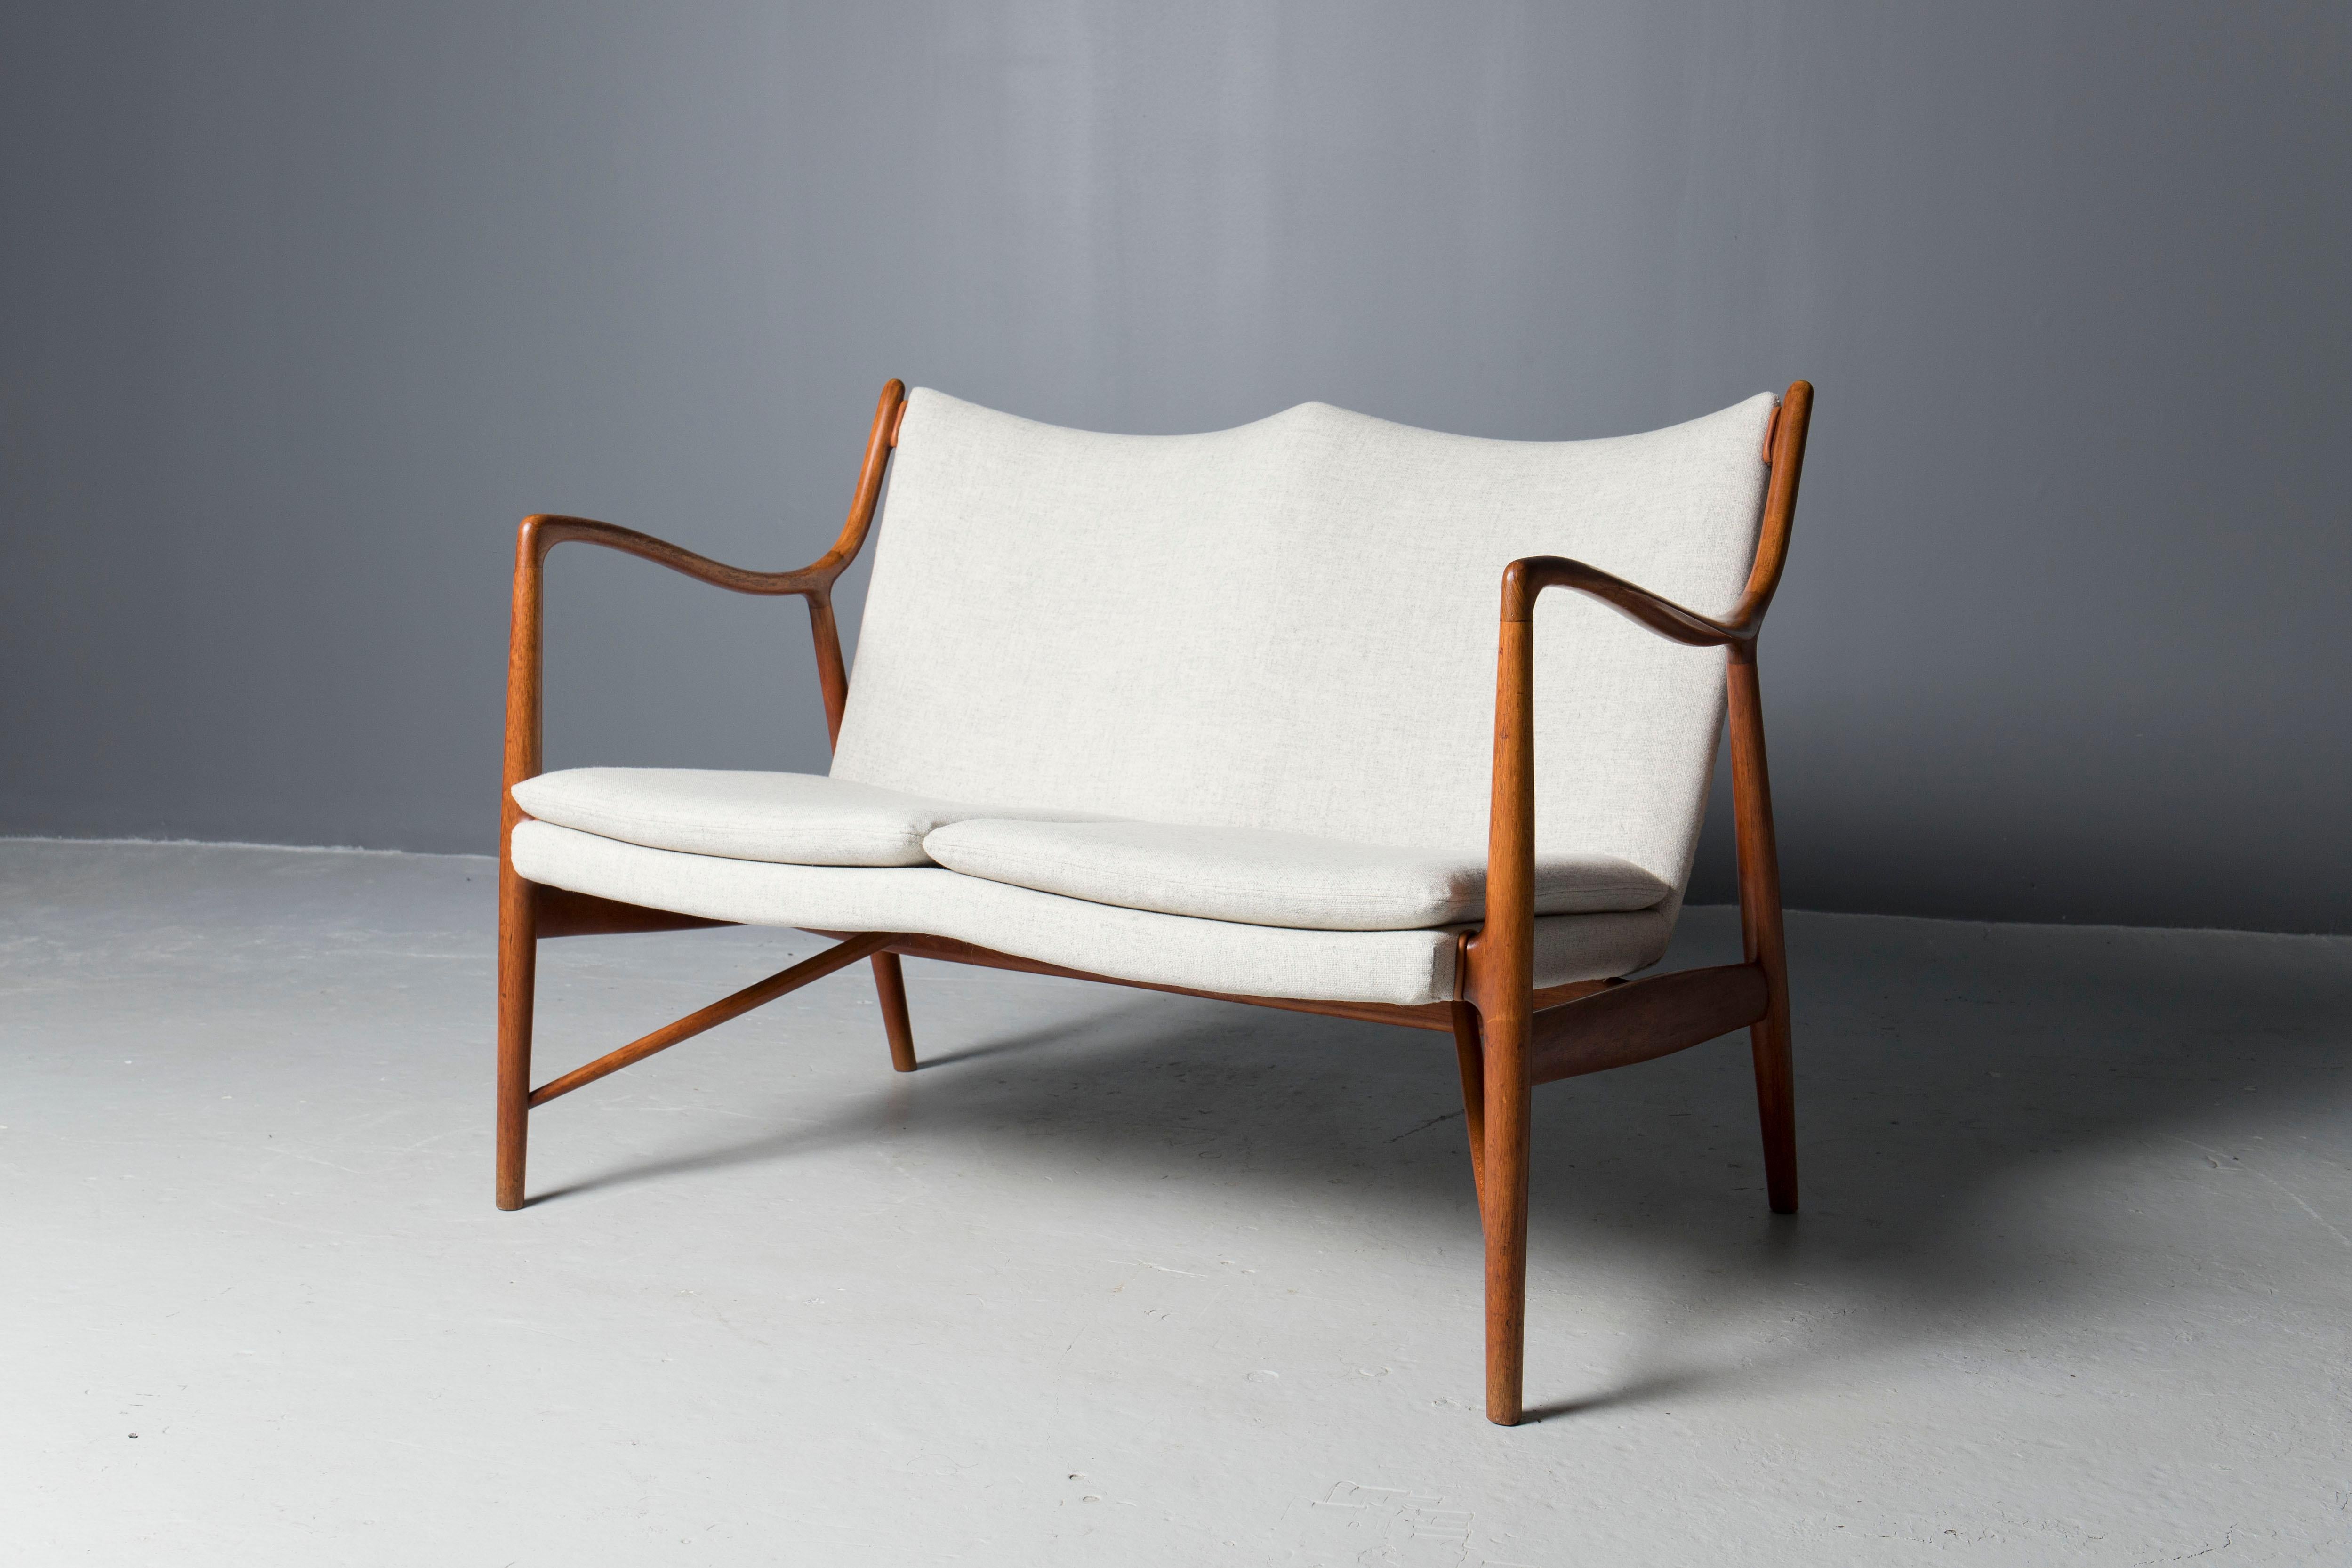 Seltenes und frühes Sofamodell 45, entworfen vom dänischen Architekten Finn Juhl und ausgeführt von Niels Vodder in den frühen 1950er Jahren.
Der skulpturale Teakholzrahmen wurde professionell gereinigt und geölt, die Polsterung wurde mit dänischer